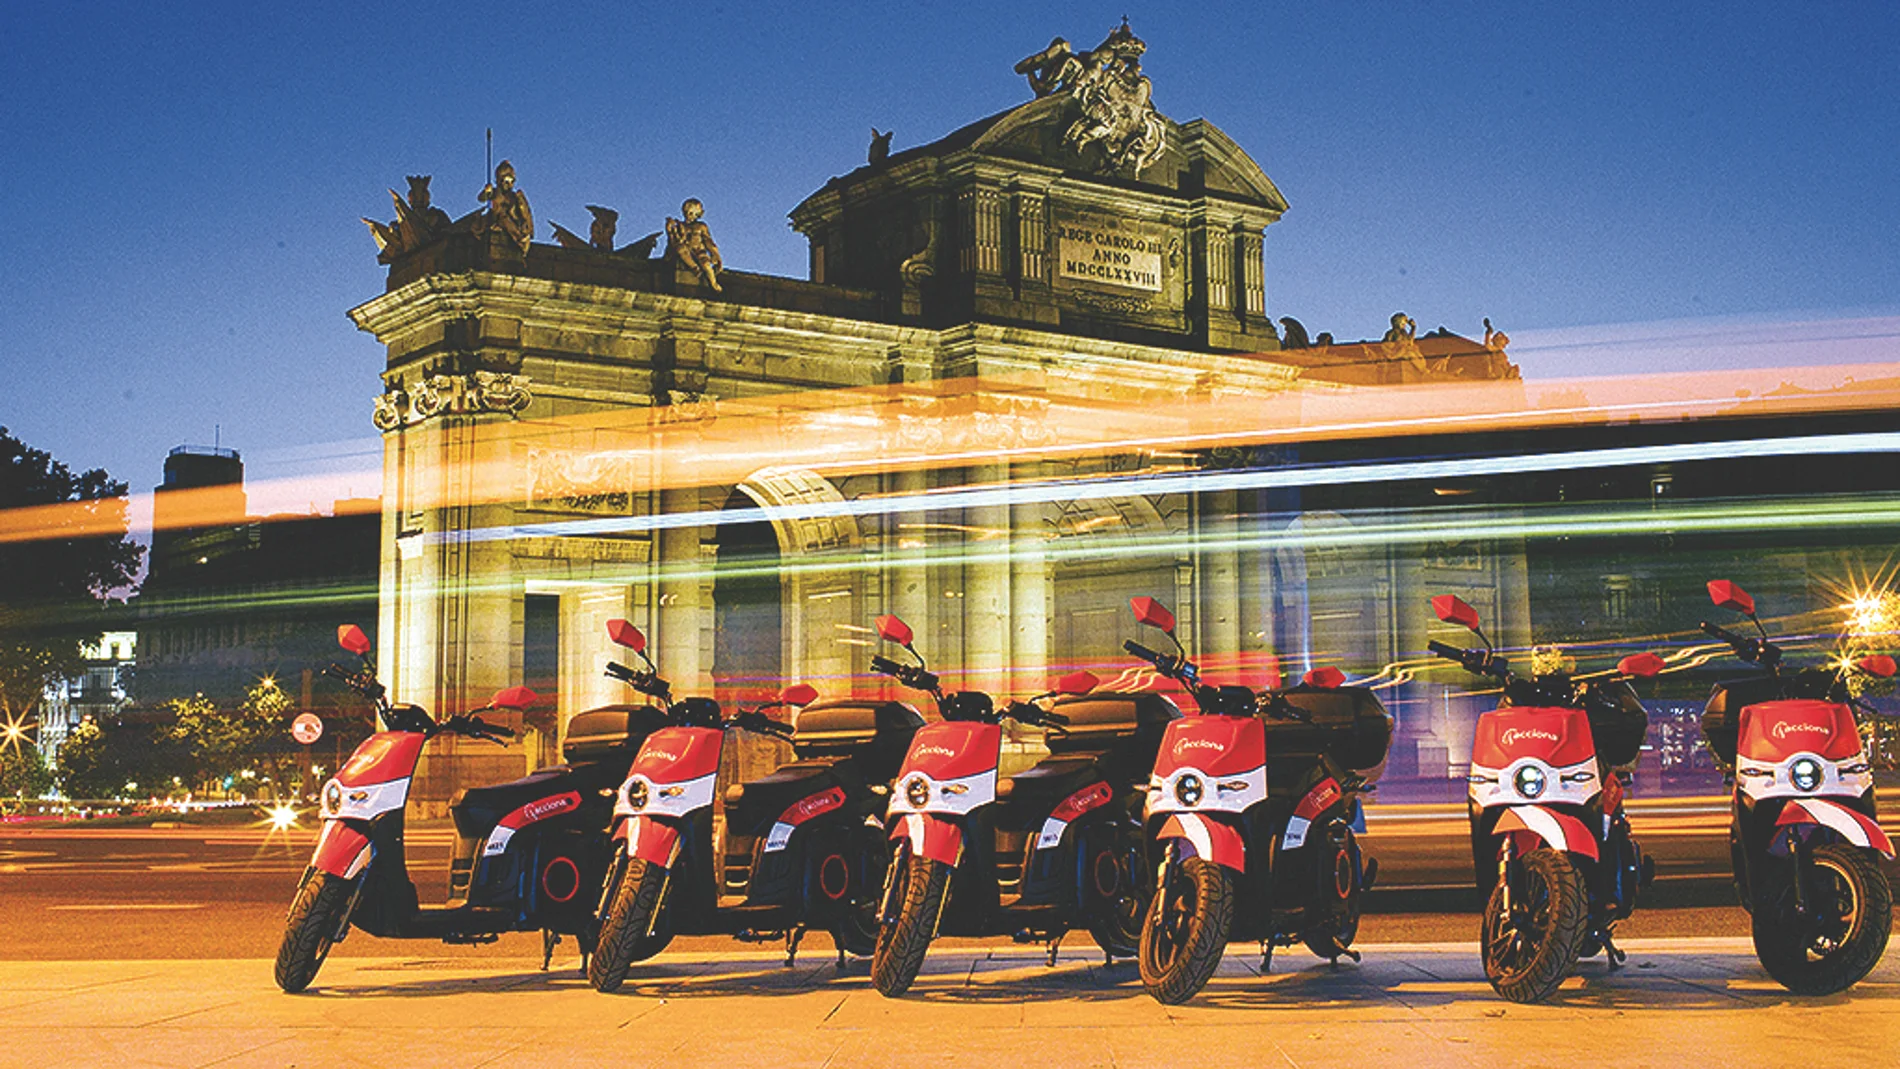 Solo en Madrid hay 3.500 motos eléctricas compartidas que cada mañana están cargadas